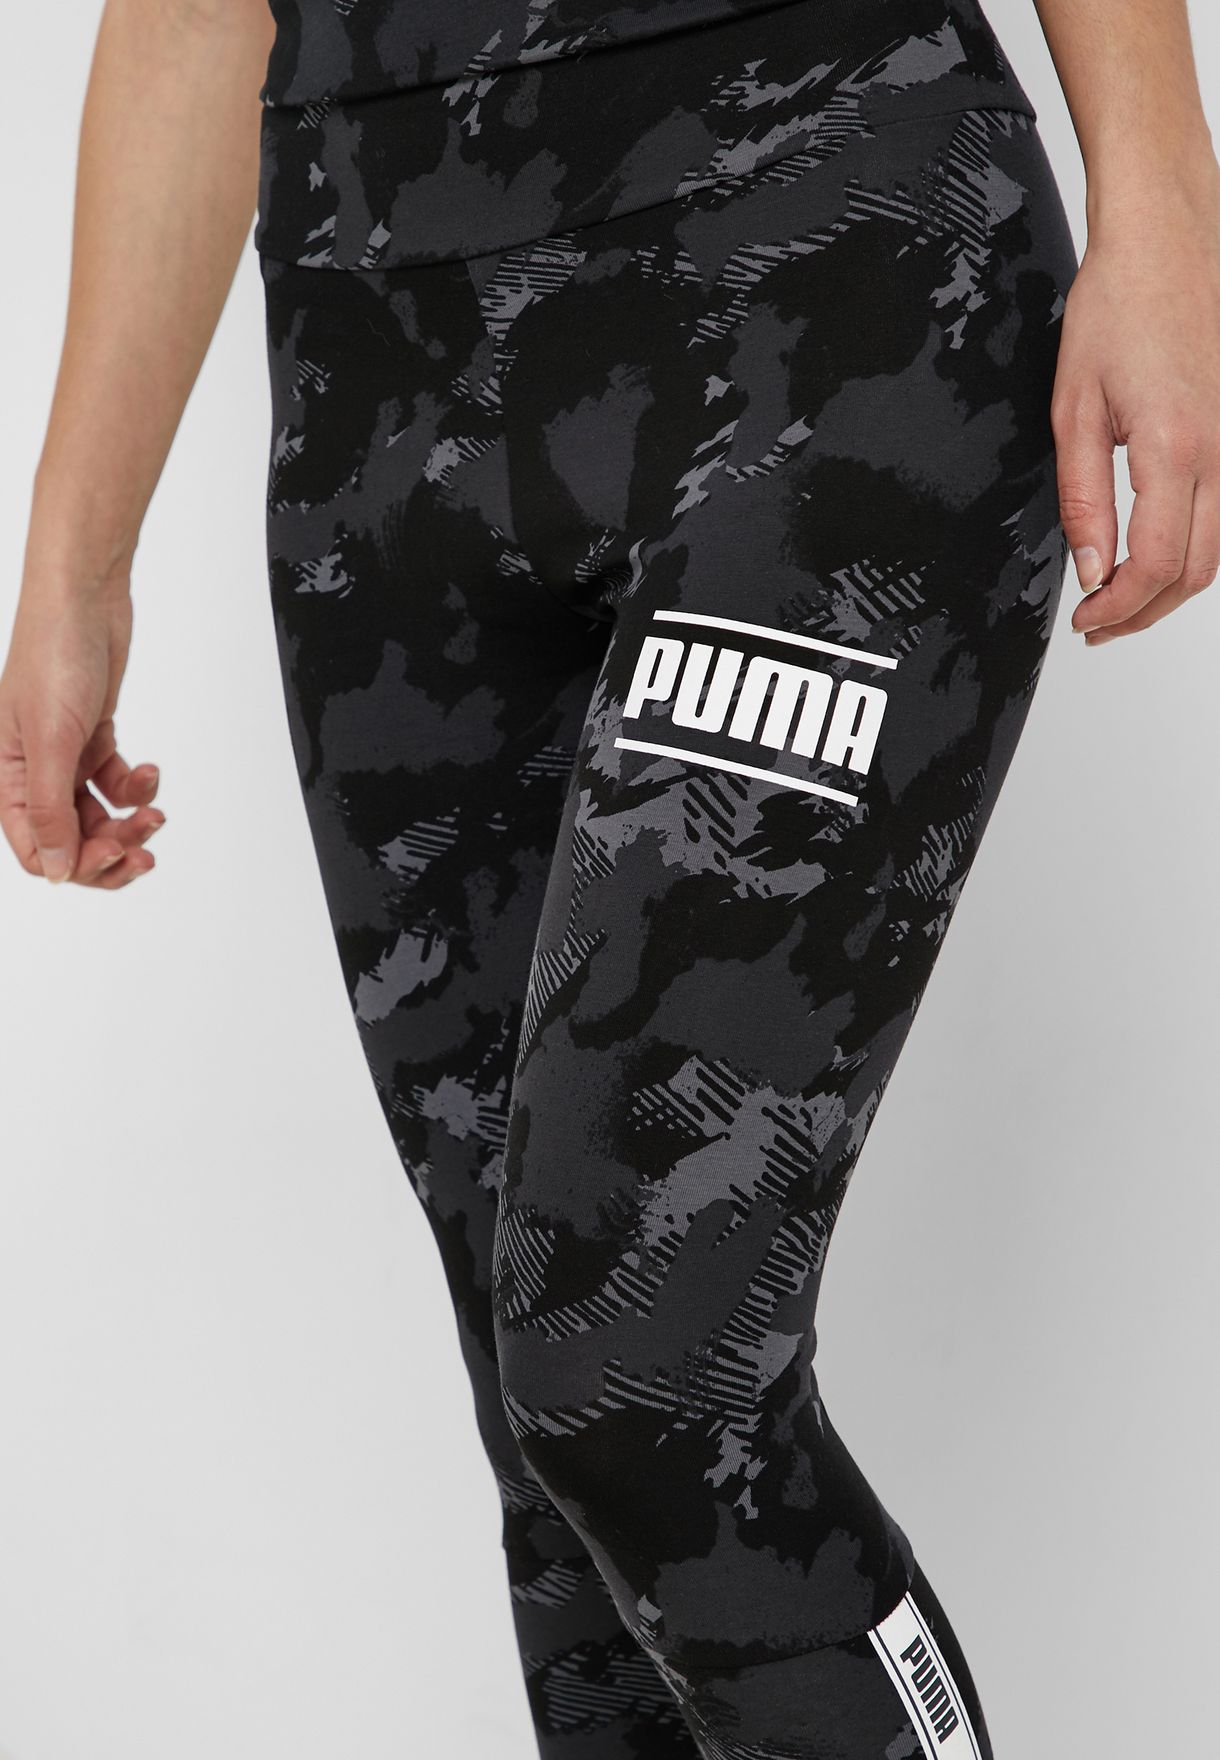 Buy Puma Prints Camo Pack Leggings for 